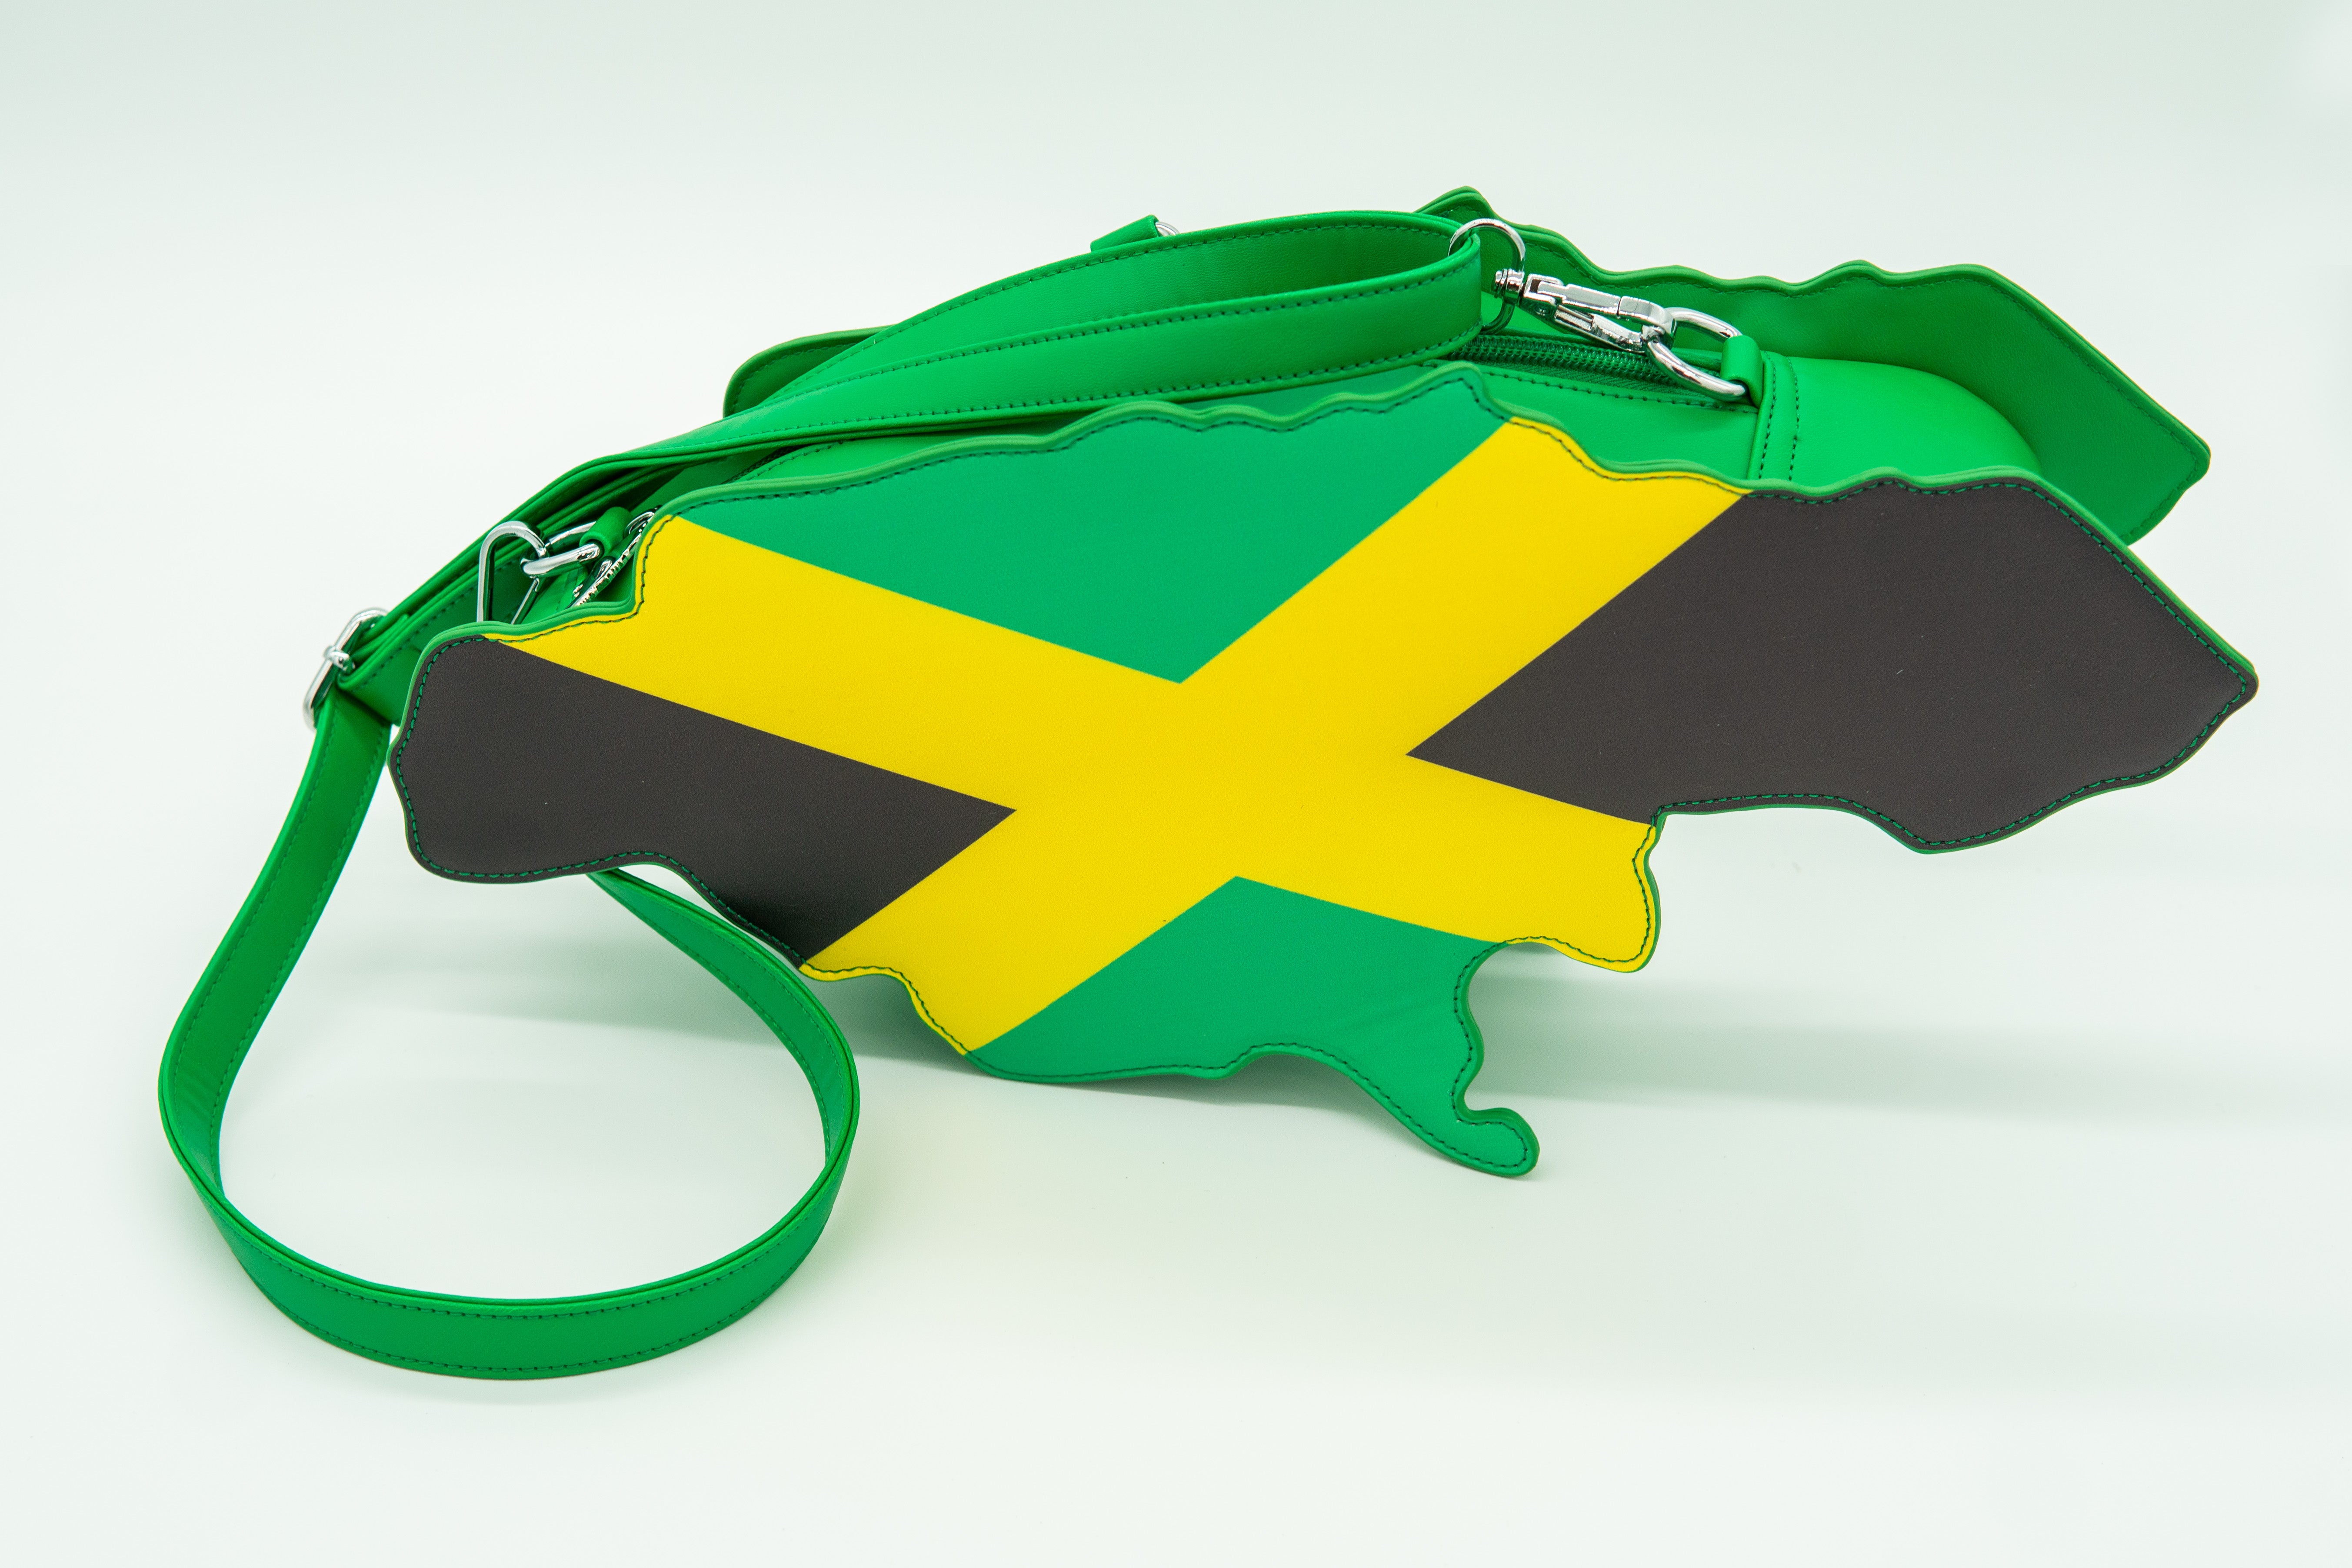 Jamaica Flag Bag